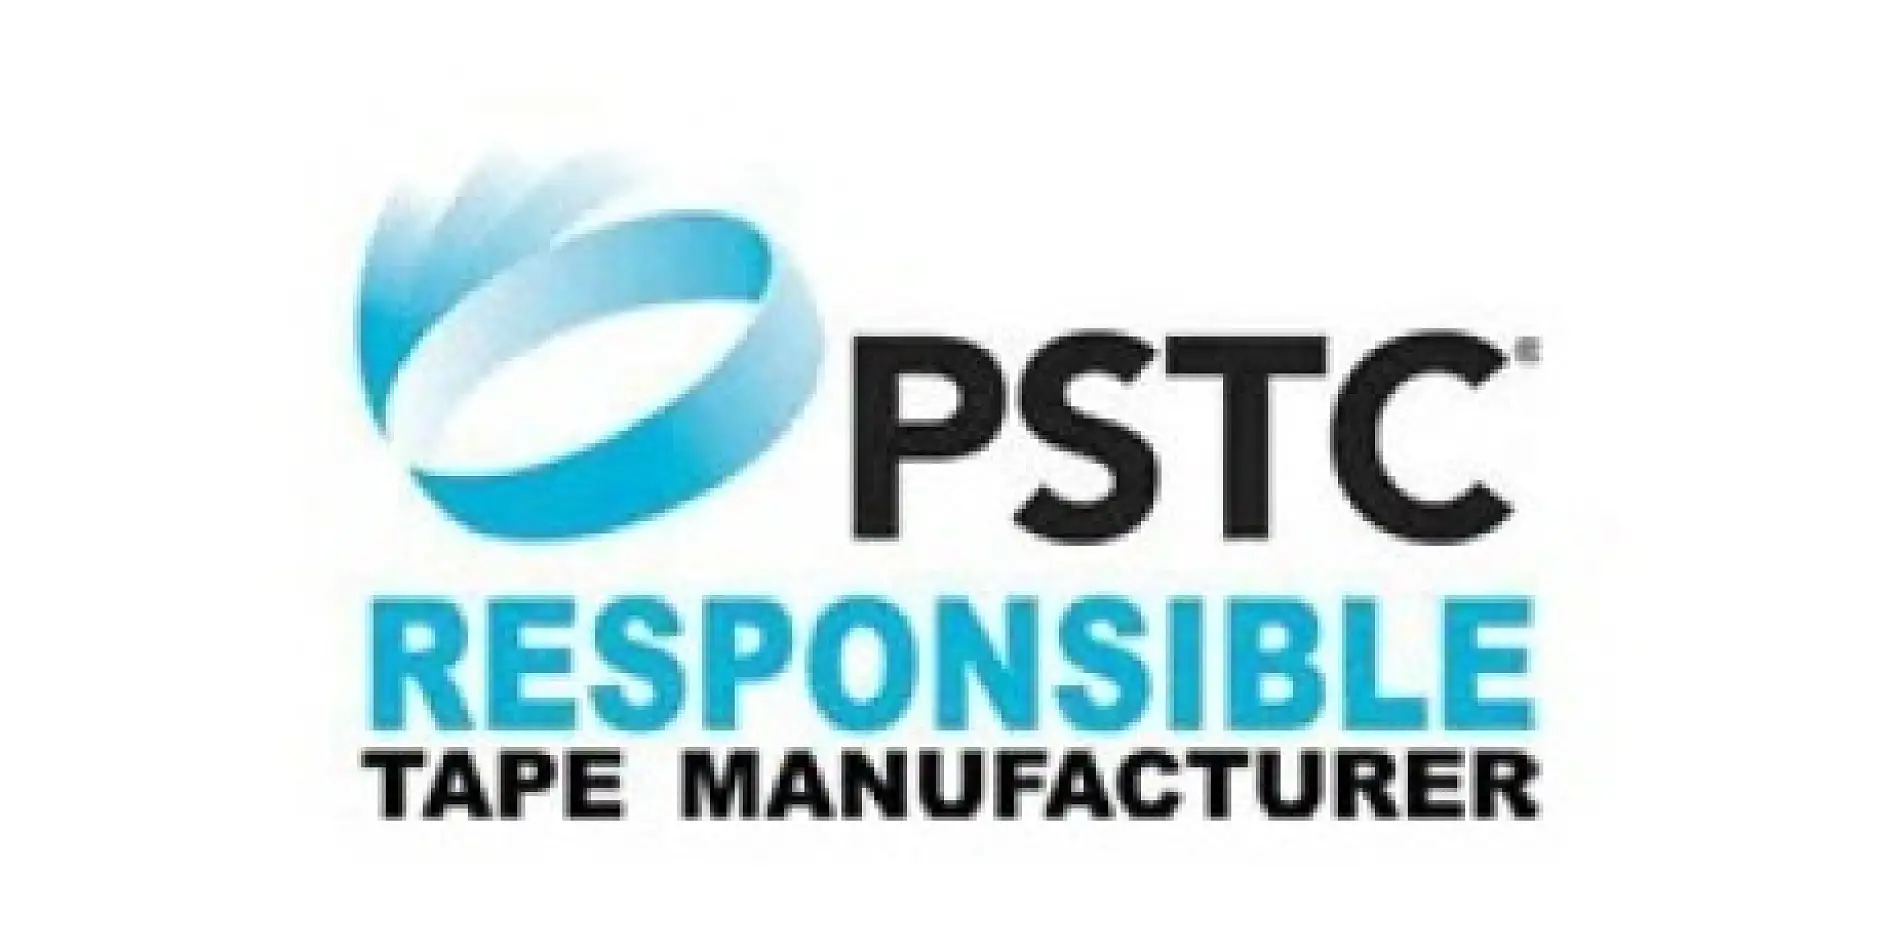 Pressure Sensitive Tape Council (PSTC) to działające od 60 lat północnoamerykańskie stowarzyszenie branżowe zrzeszające producentów taśm i ich dostawców. Organizacja powstała, aby pomagać podmiotom z branży w wytwarzaniu wysokiej jakości taśm samoprzylepnych w różnych obszarach globalnego rynku.